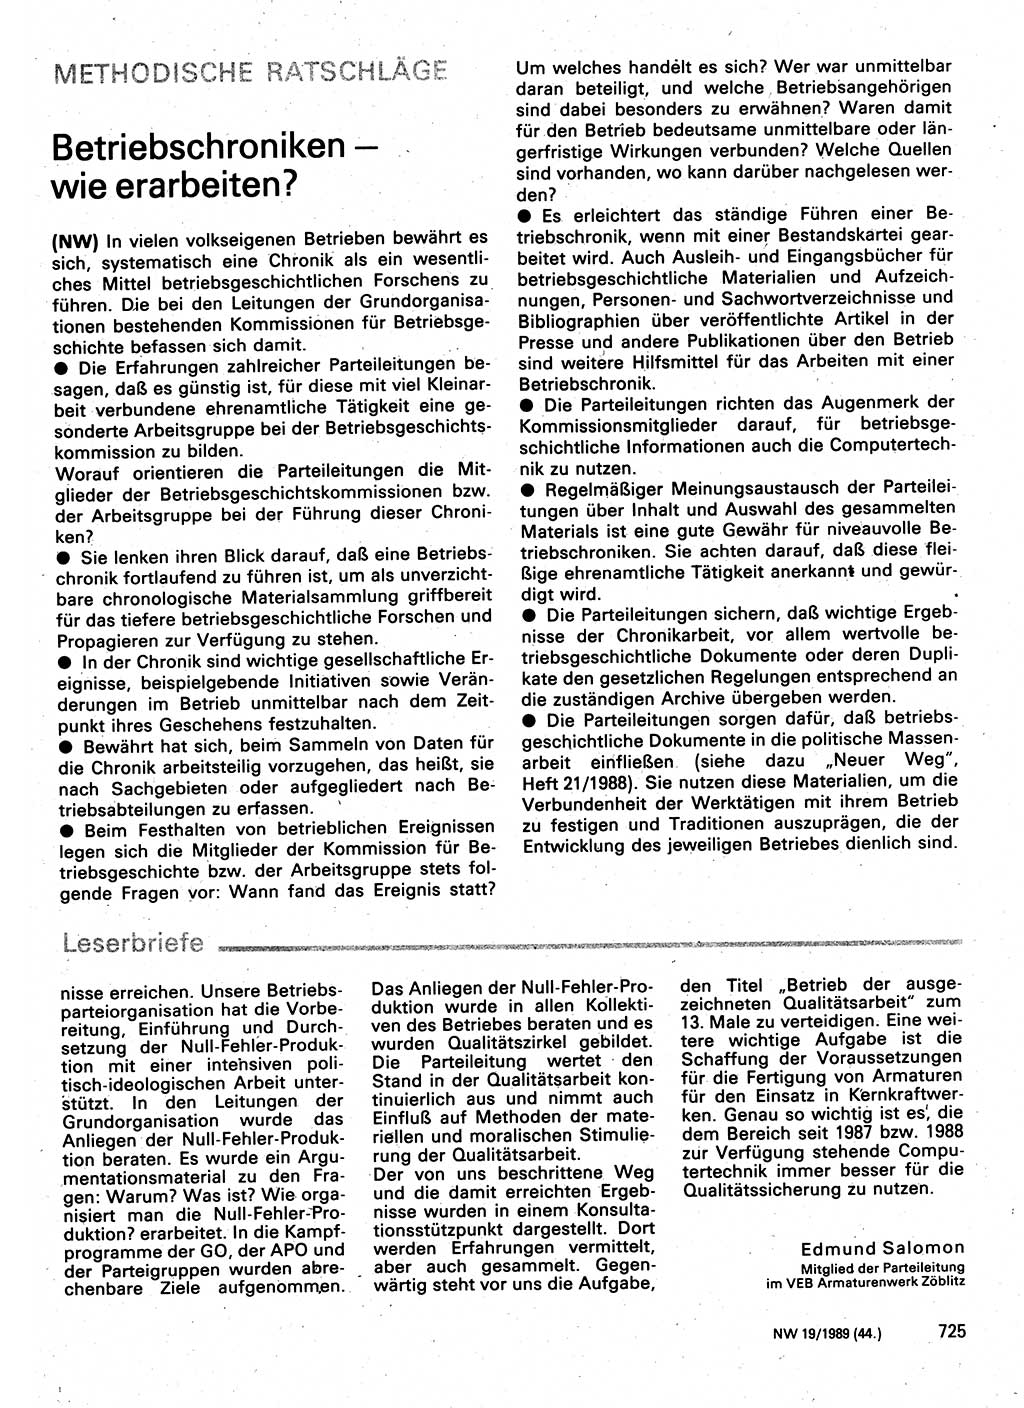 Neuer Weg (NW), Organ des Zentralkomitees (ZK) der SED (Sozialistische Einheitspartei Deutschlands) für Fragen des Parteilebens, 44. Jahrgang [Deutsche Demokratische Republik (DDR)] 1989, Seite 725 (NW ZK SED DDR 1989, S. 725)